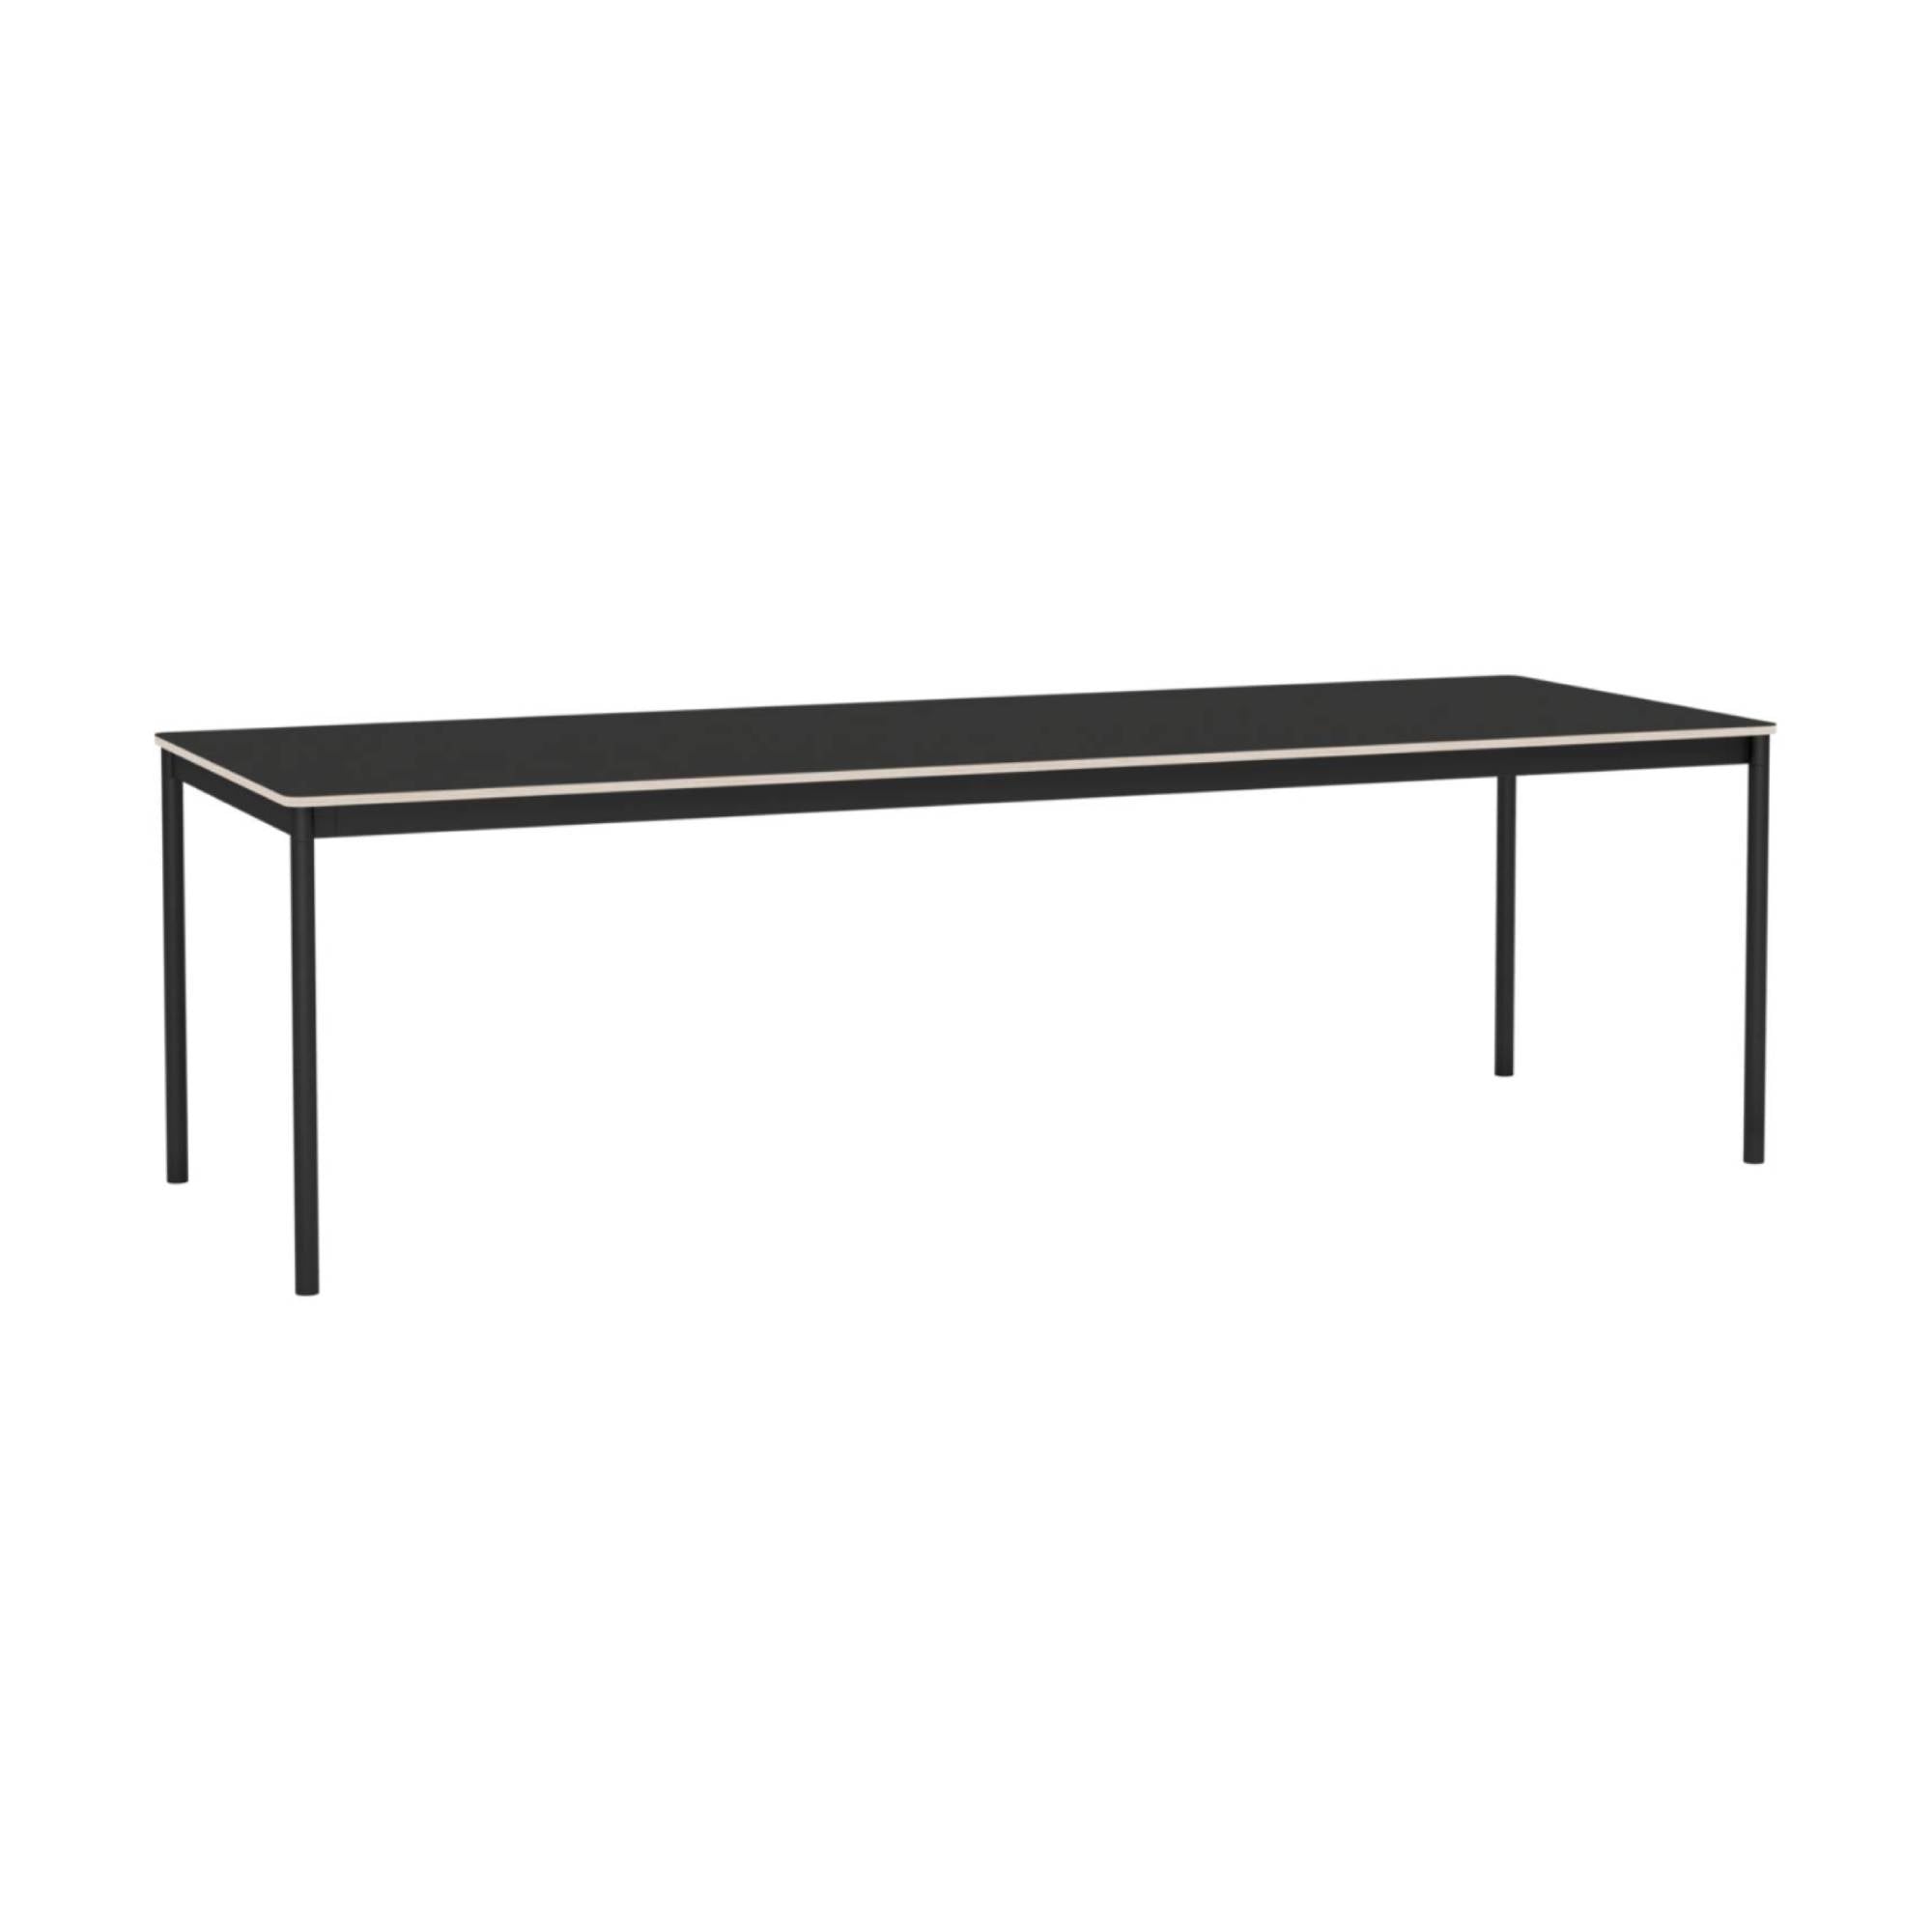 Base Table: Large + Black Nanolaminate + Black